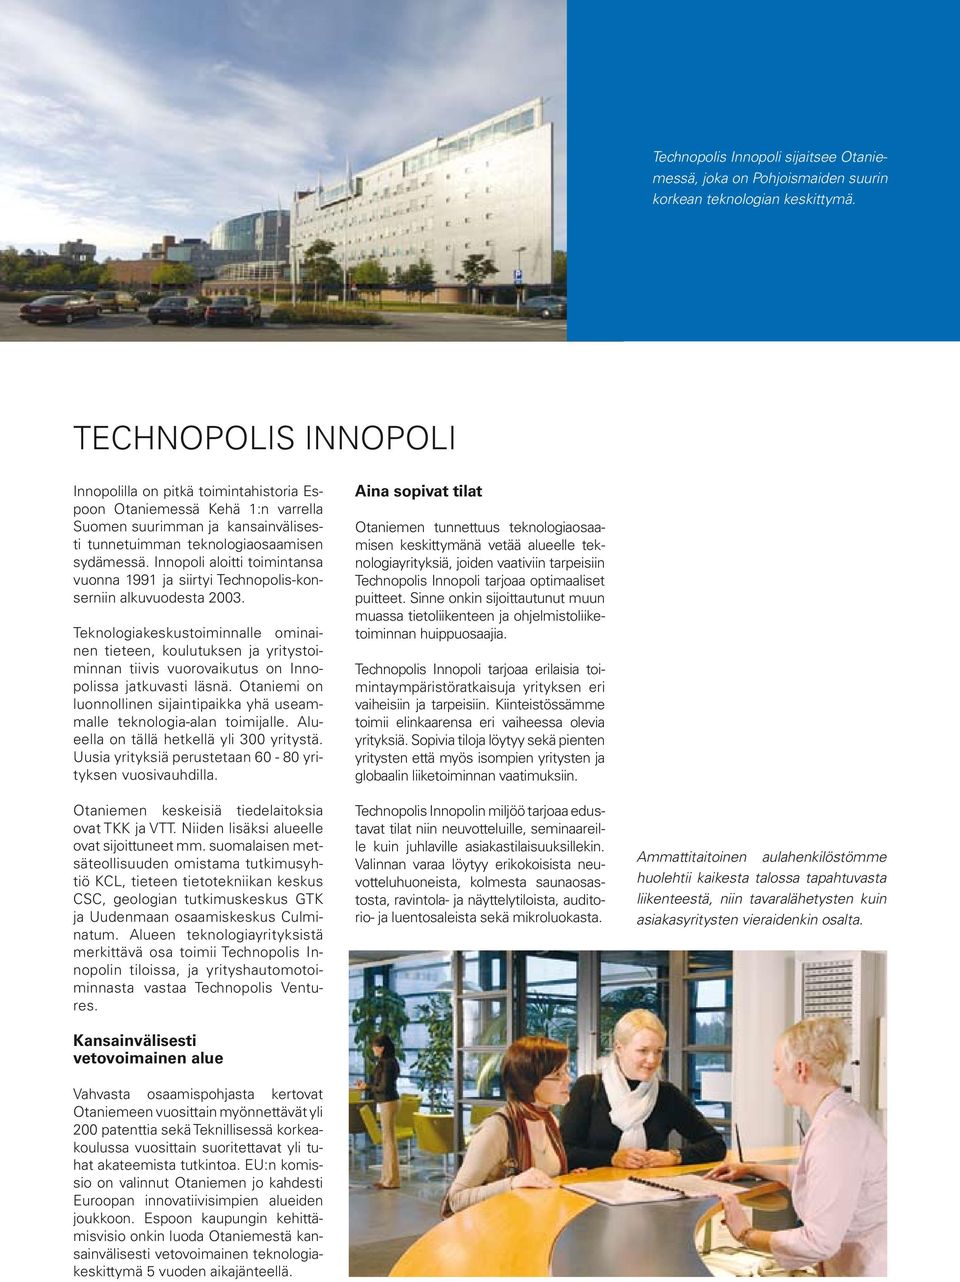 Innopoli aloitti toimintansa vuonna 1991 ja siirtyi Technopolis-konserniin alkuvuodesta 2003.